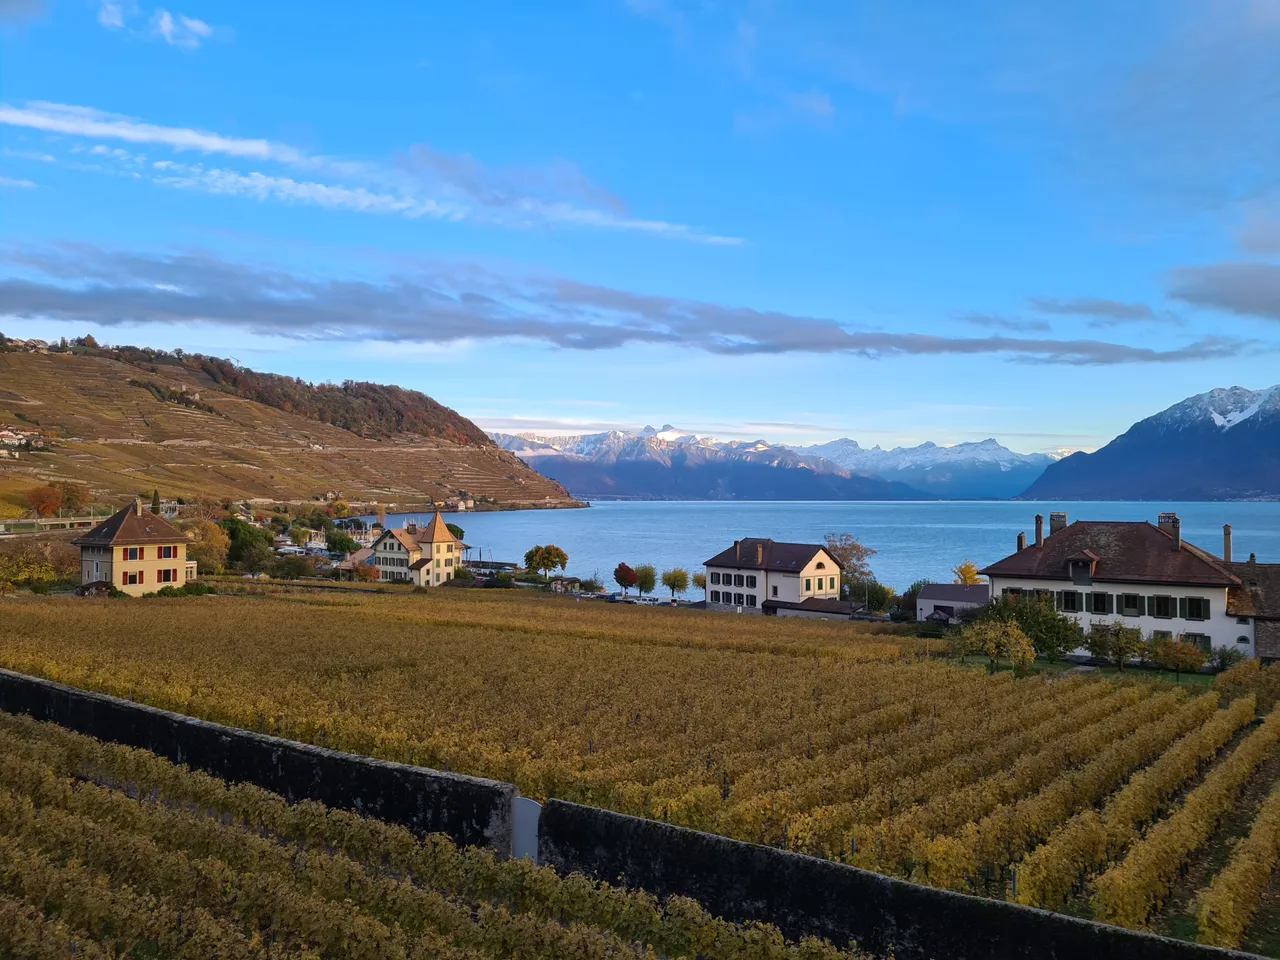 Vue sur les vignes en terrase du Lavaux, le lac Léman, les pré-Alpes enseigées, l'entrée du Valais et les Alpes depuis Cully